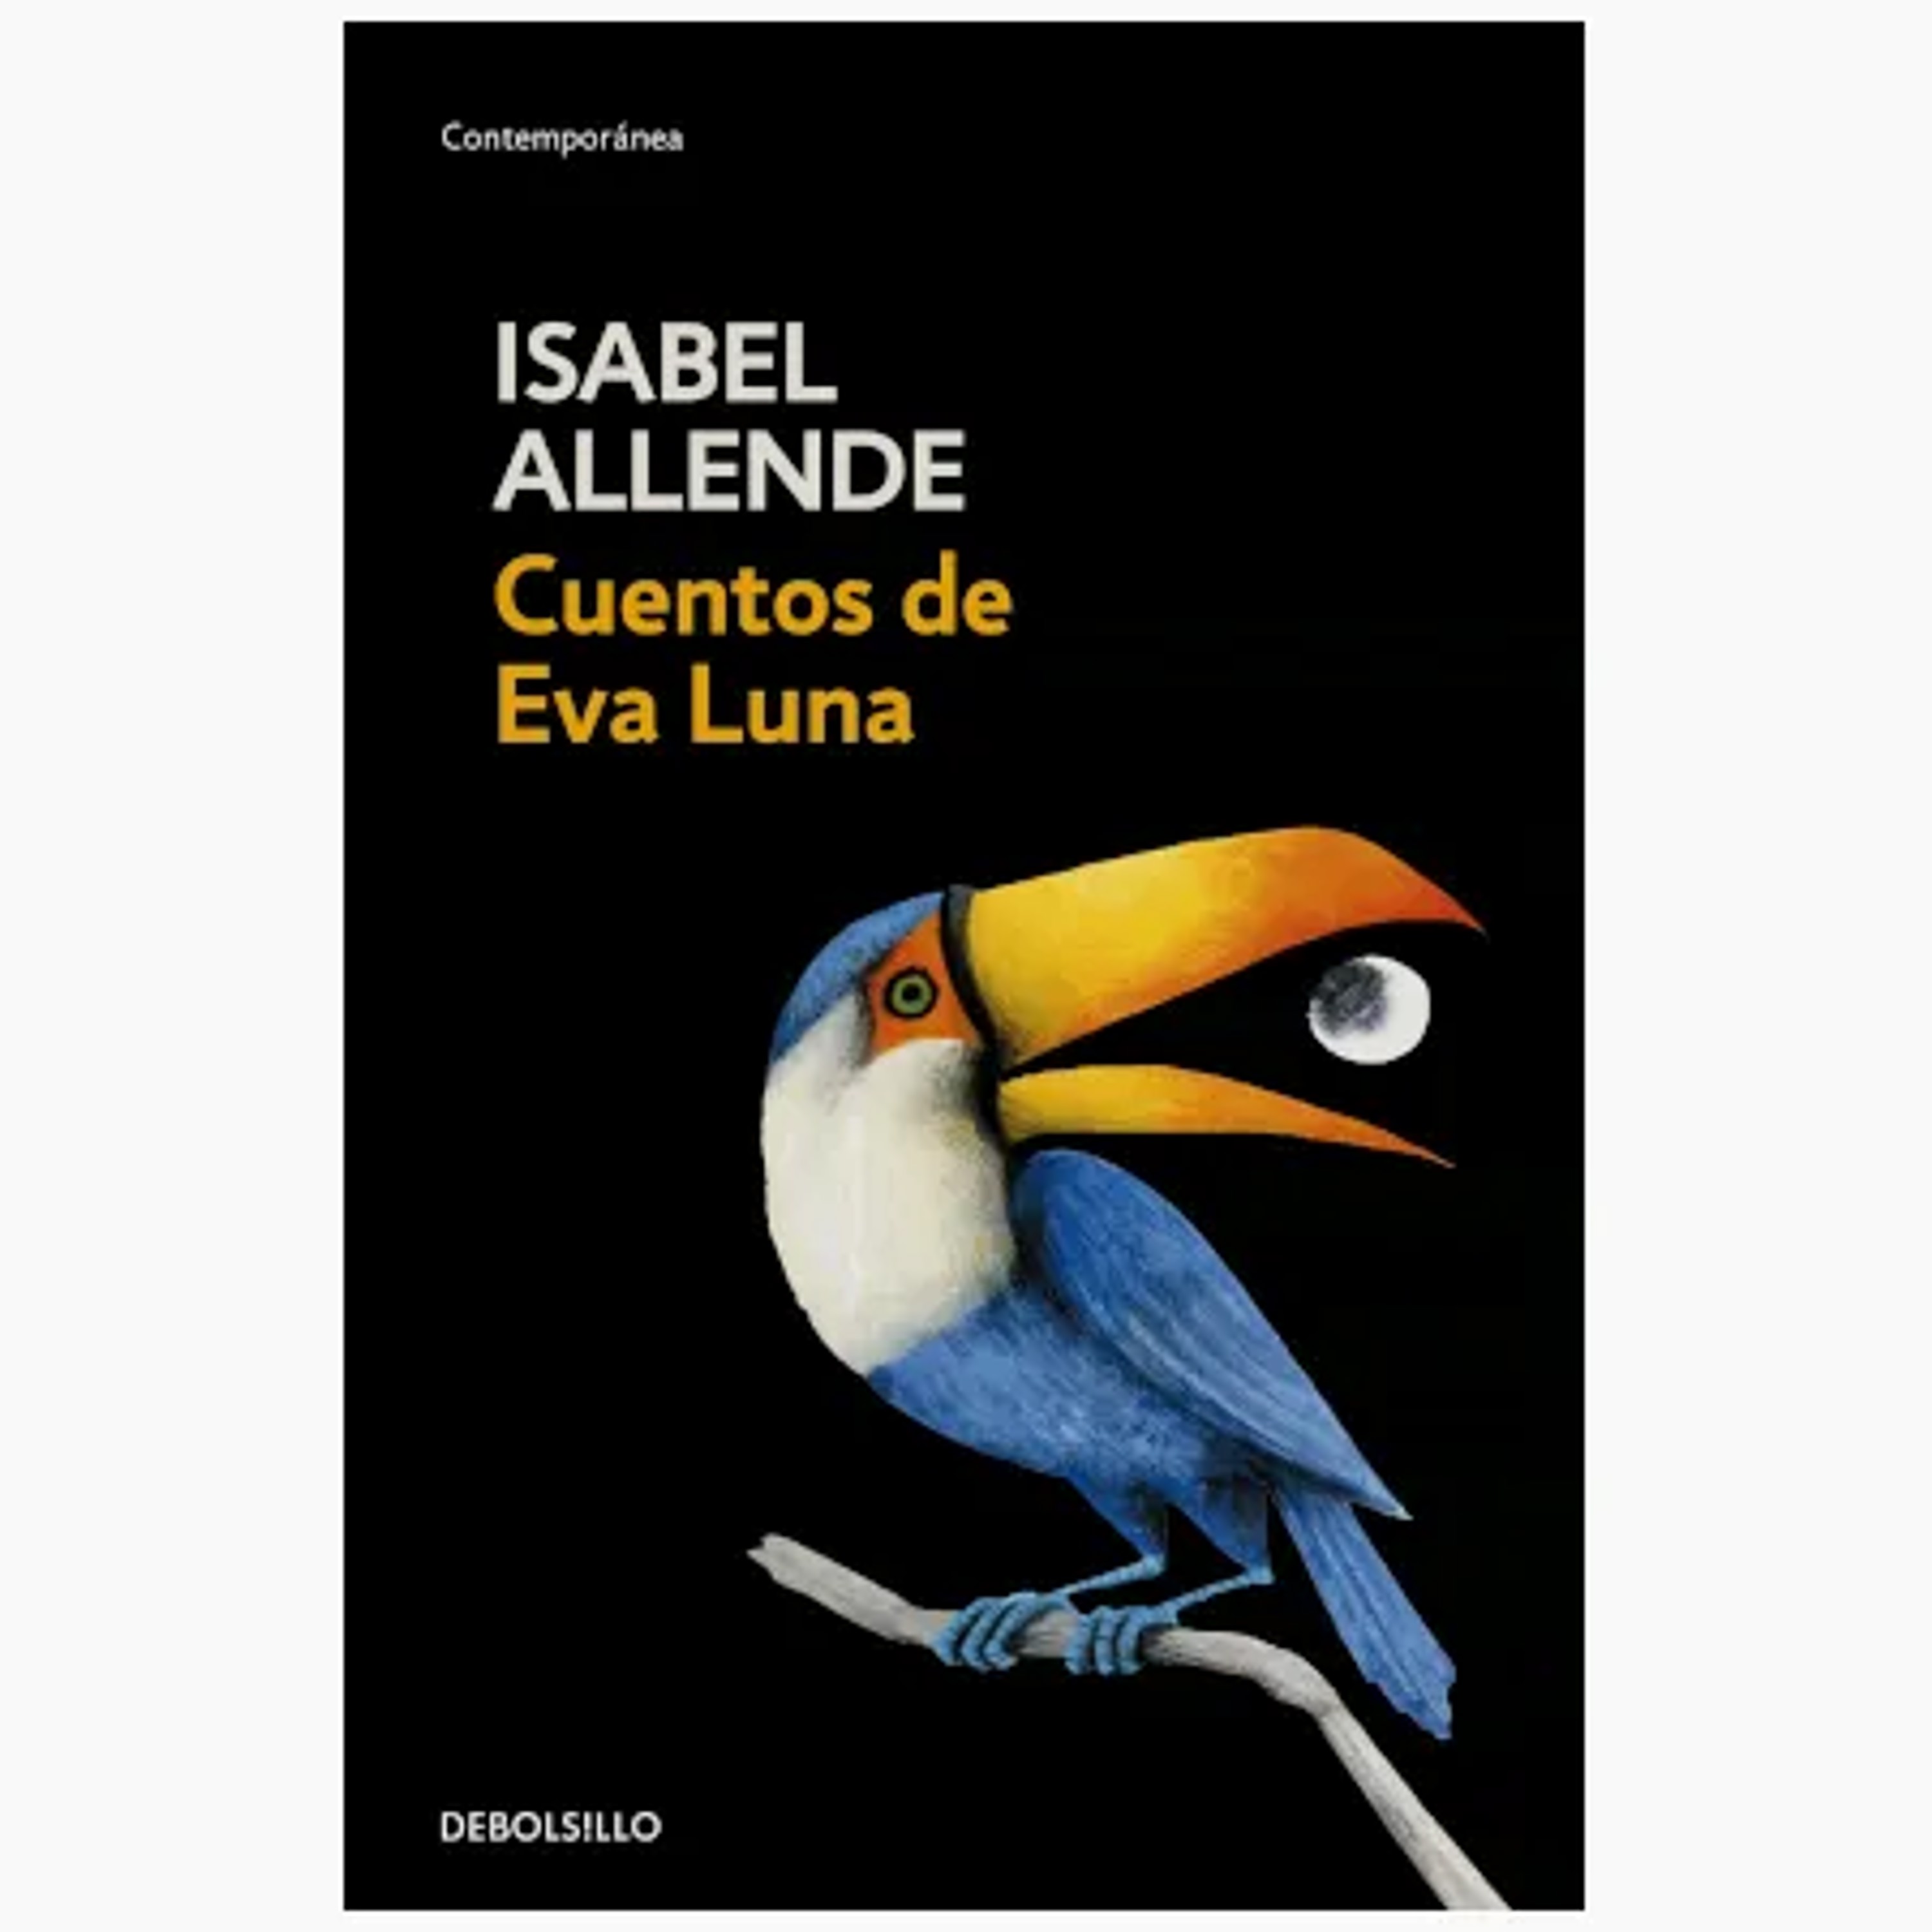 Resumen del libro Cuentos de Eva Luna de Isabel Allende